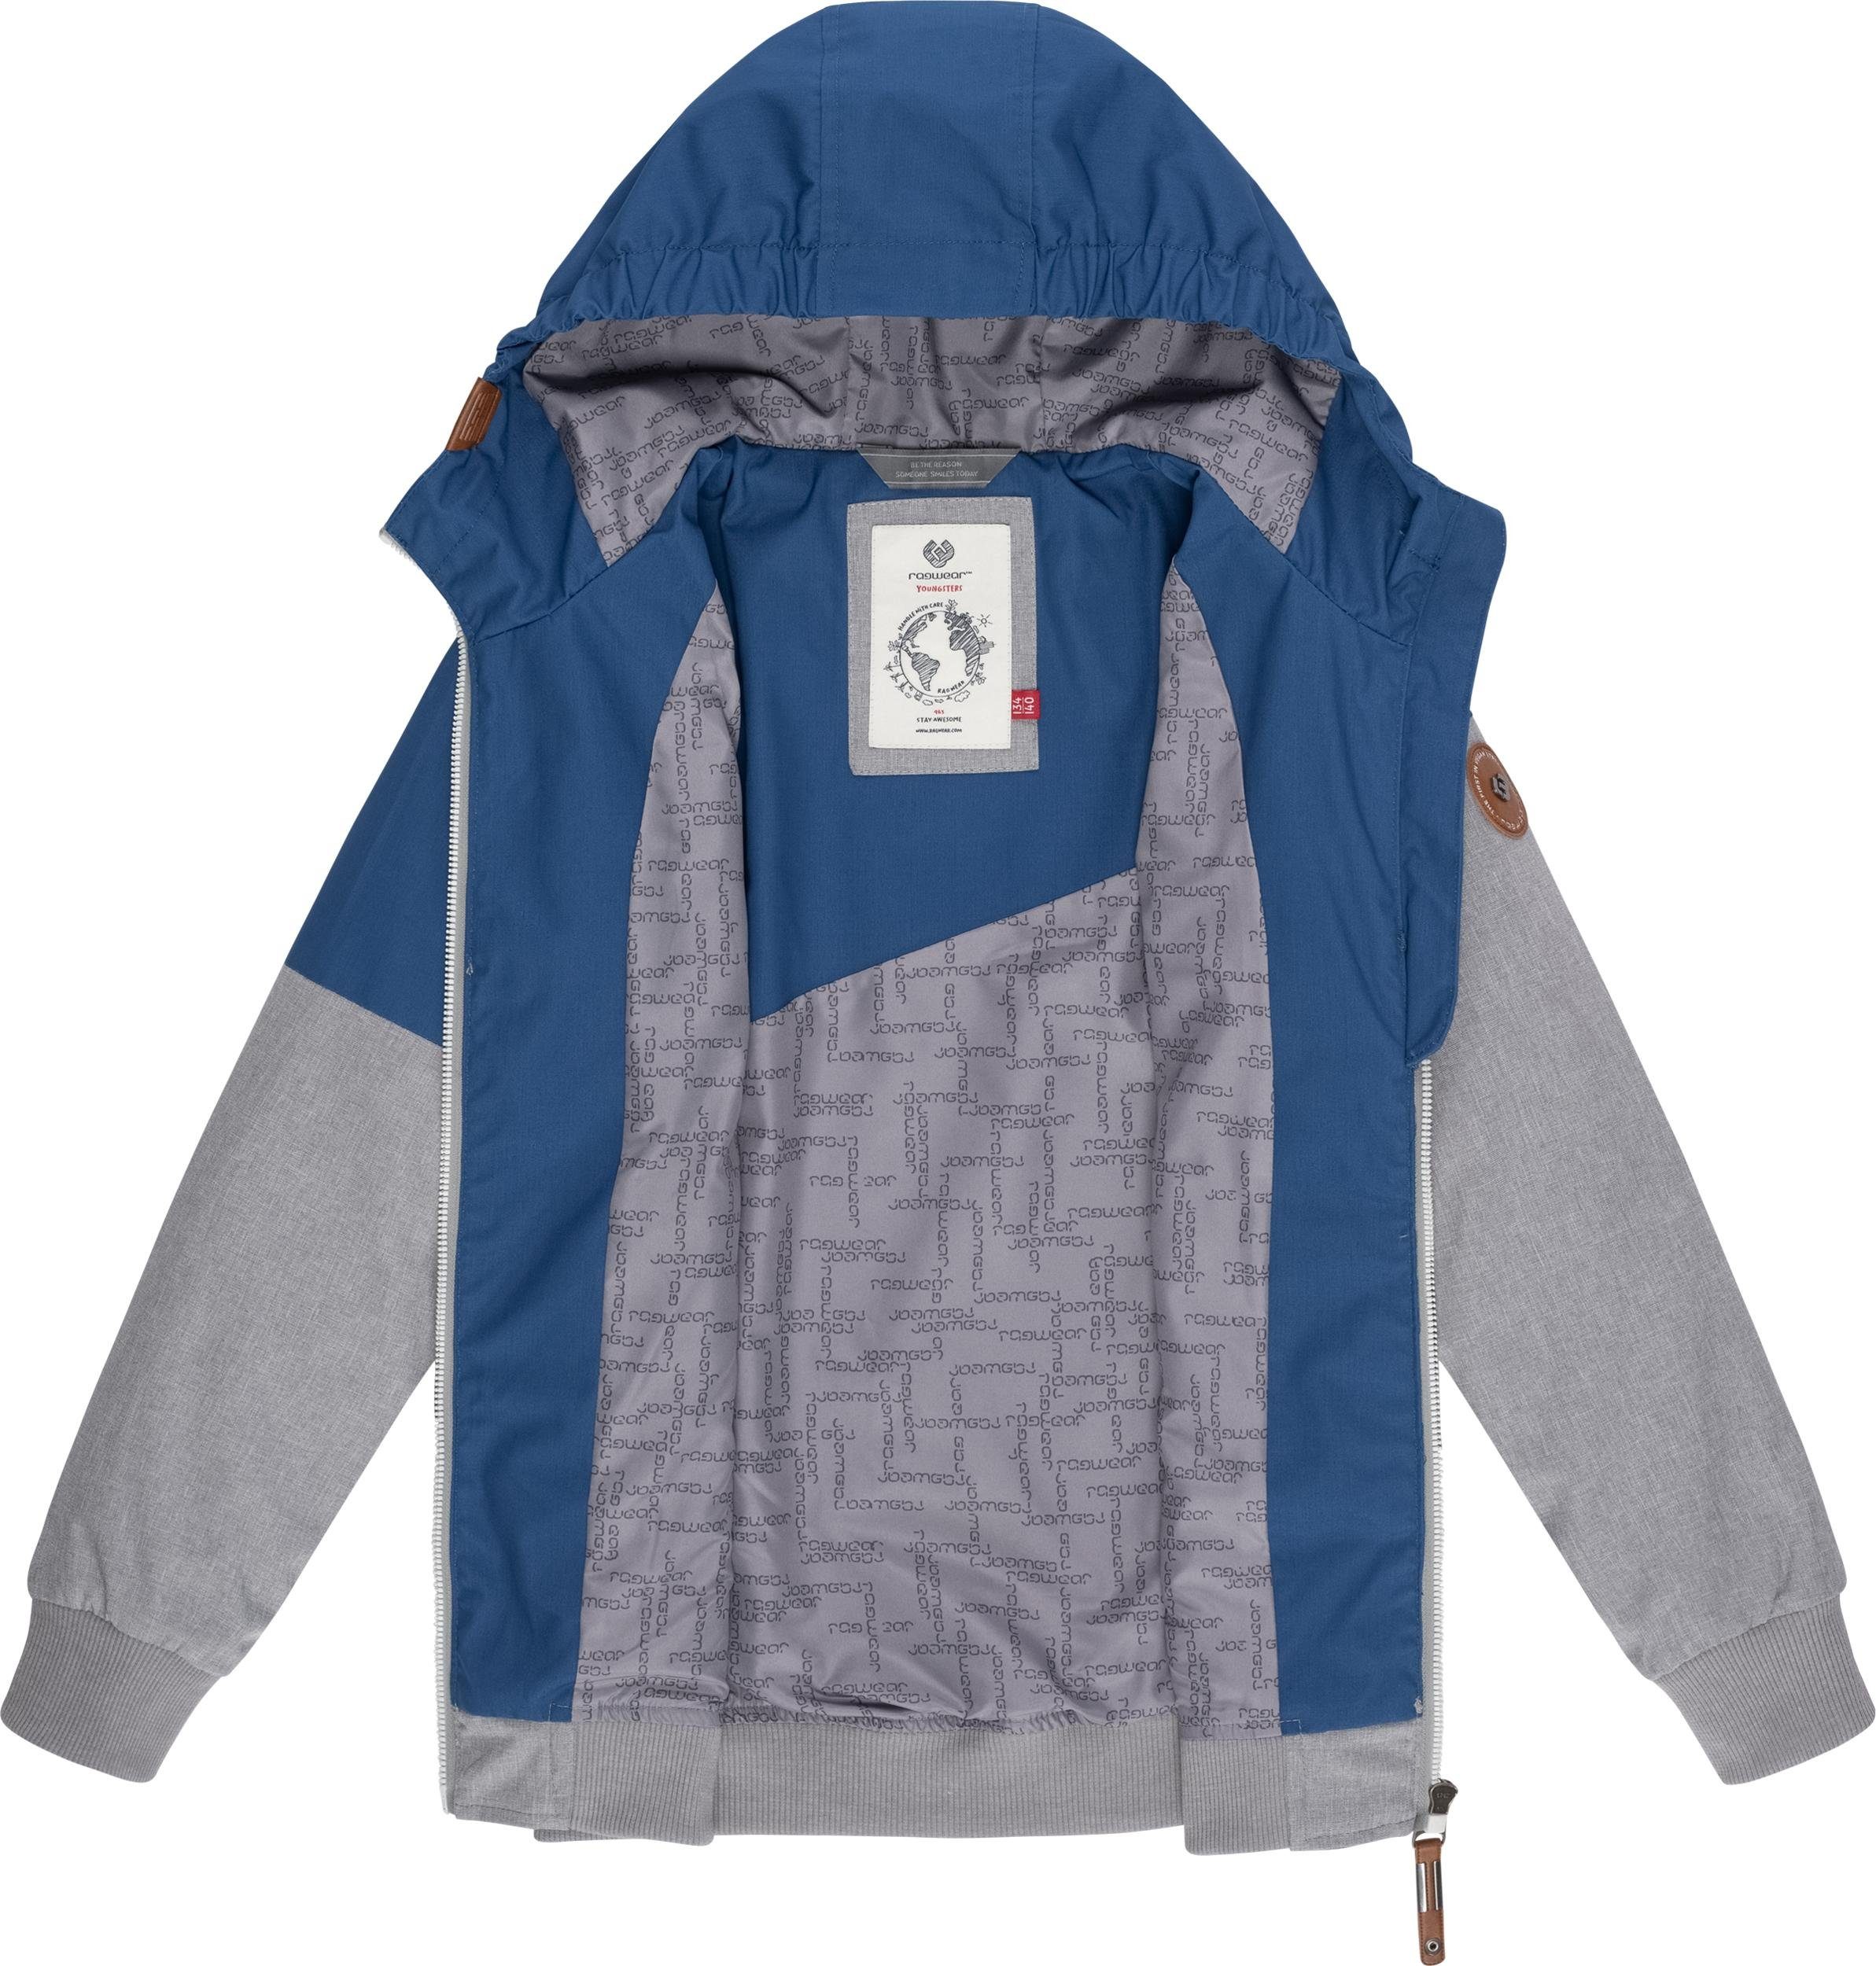 Jowell Outdoorjacke Ragwear mit Kapuze Jungen II Jacke blau sportliche